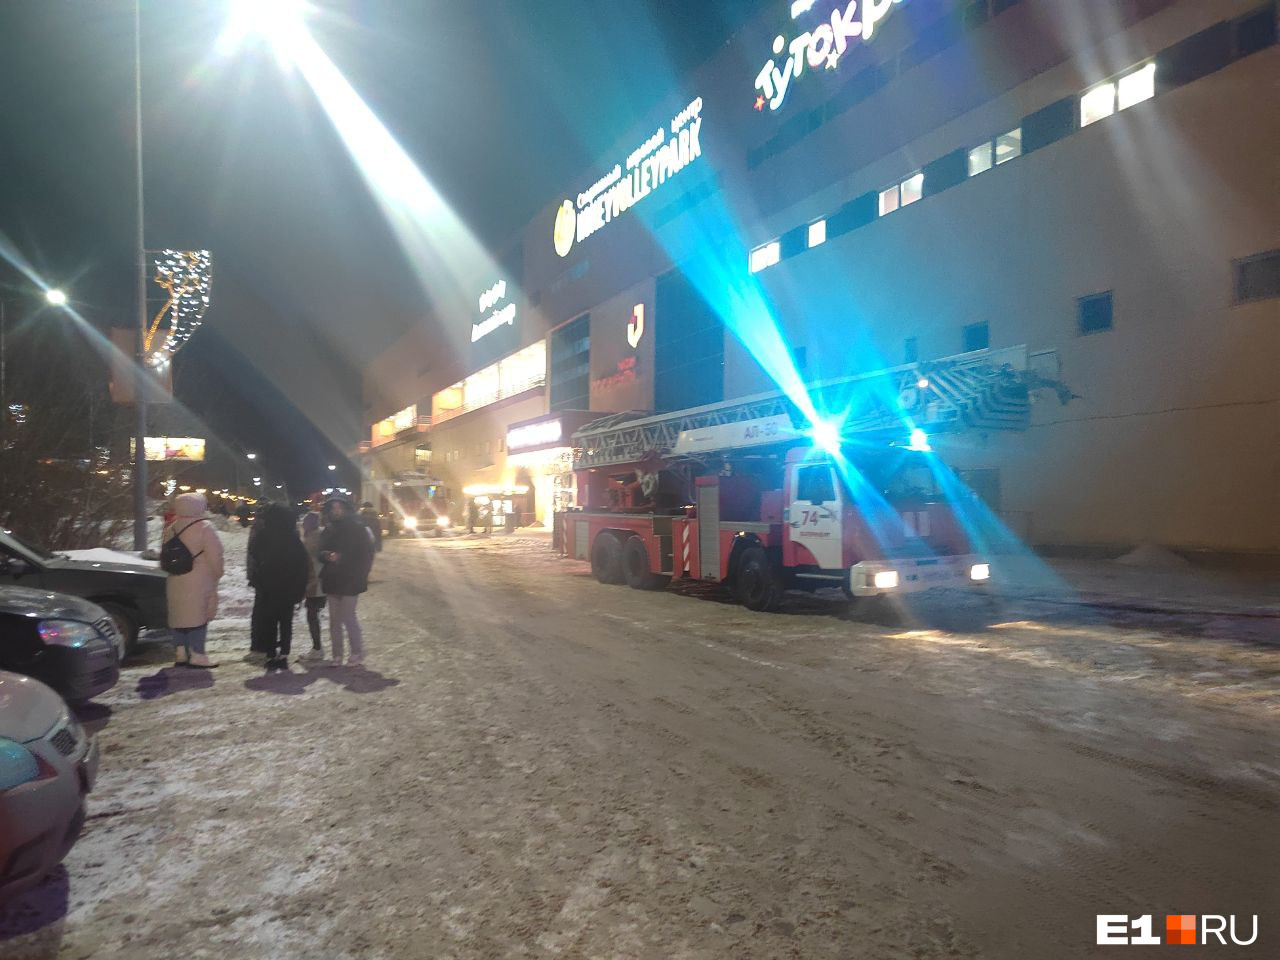 К торговому центру в Екатеринбурге съехались пожарные машины. Рассказываем, что случилось